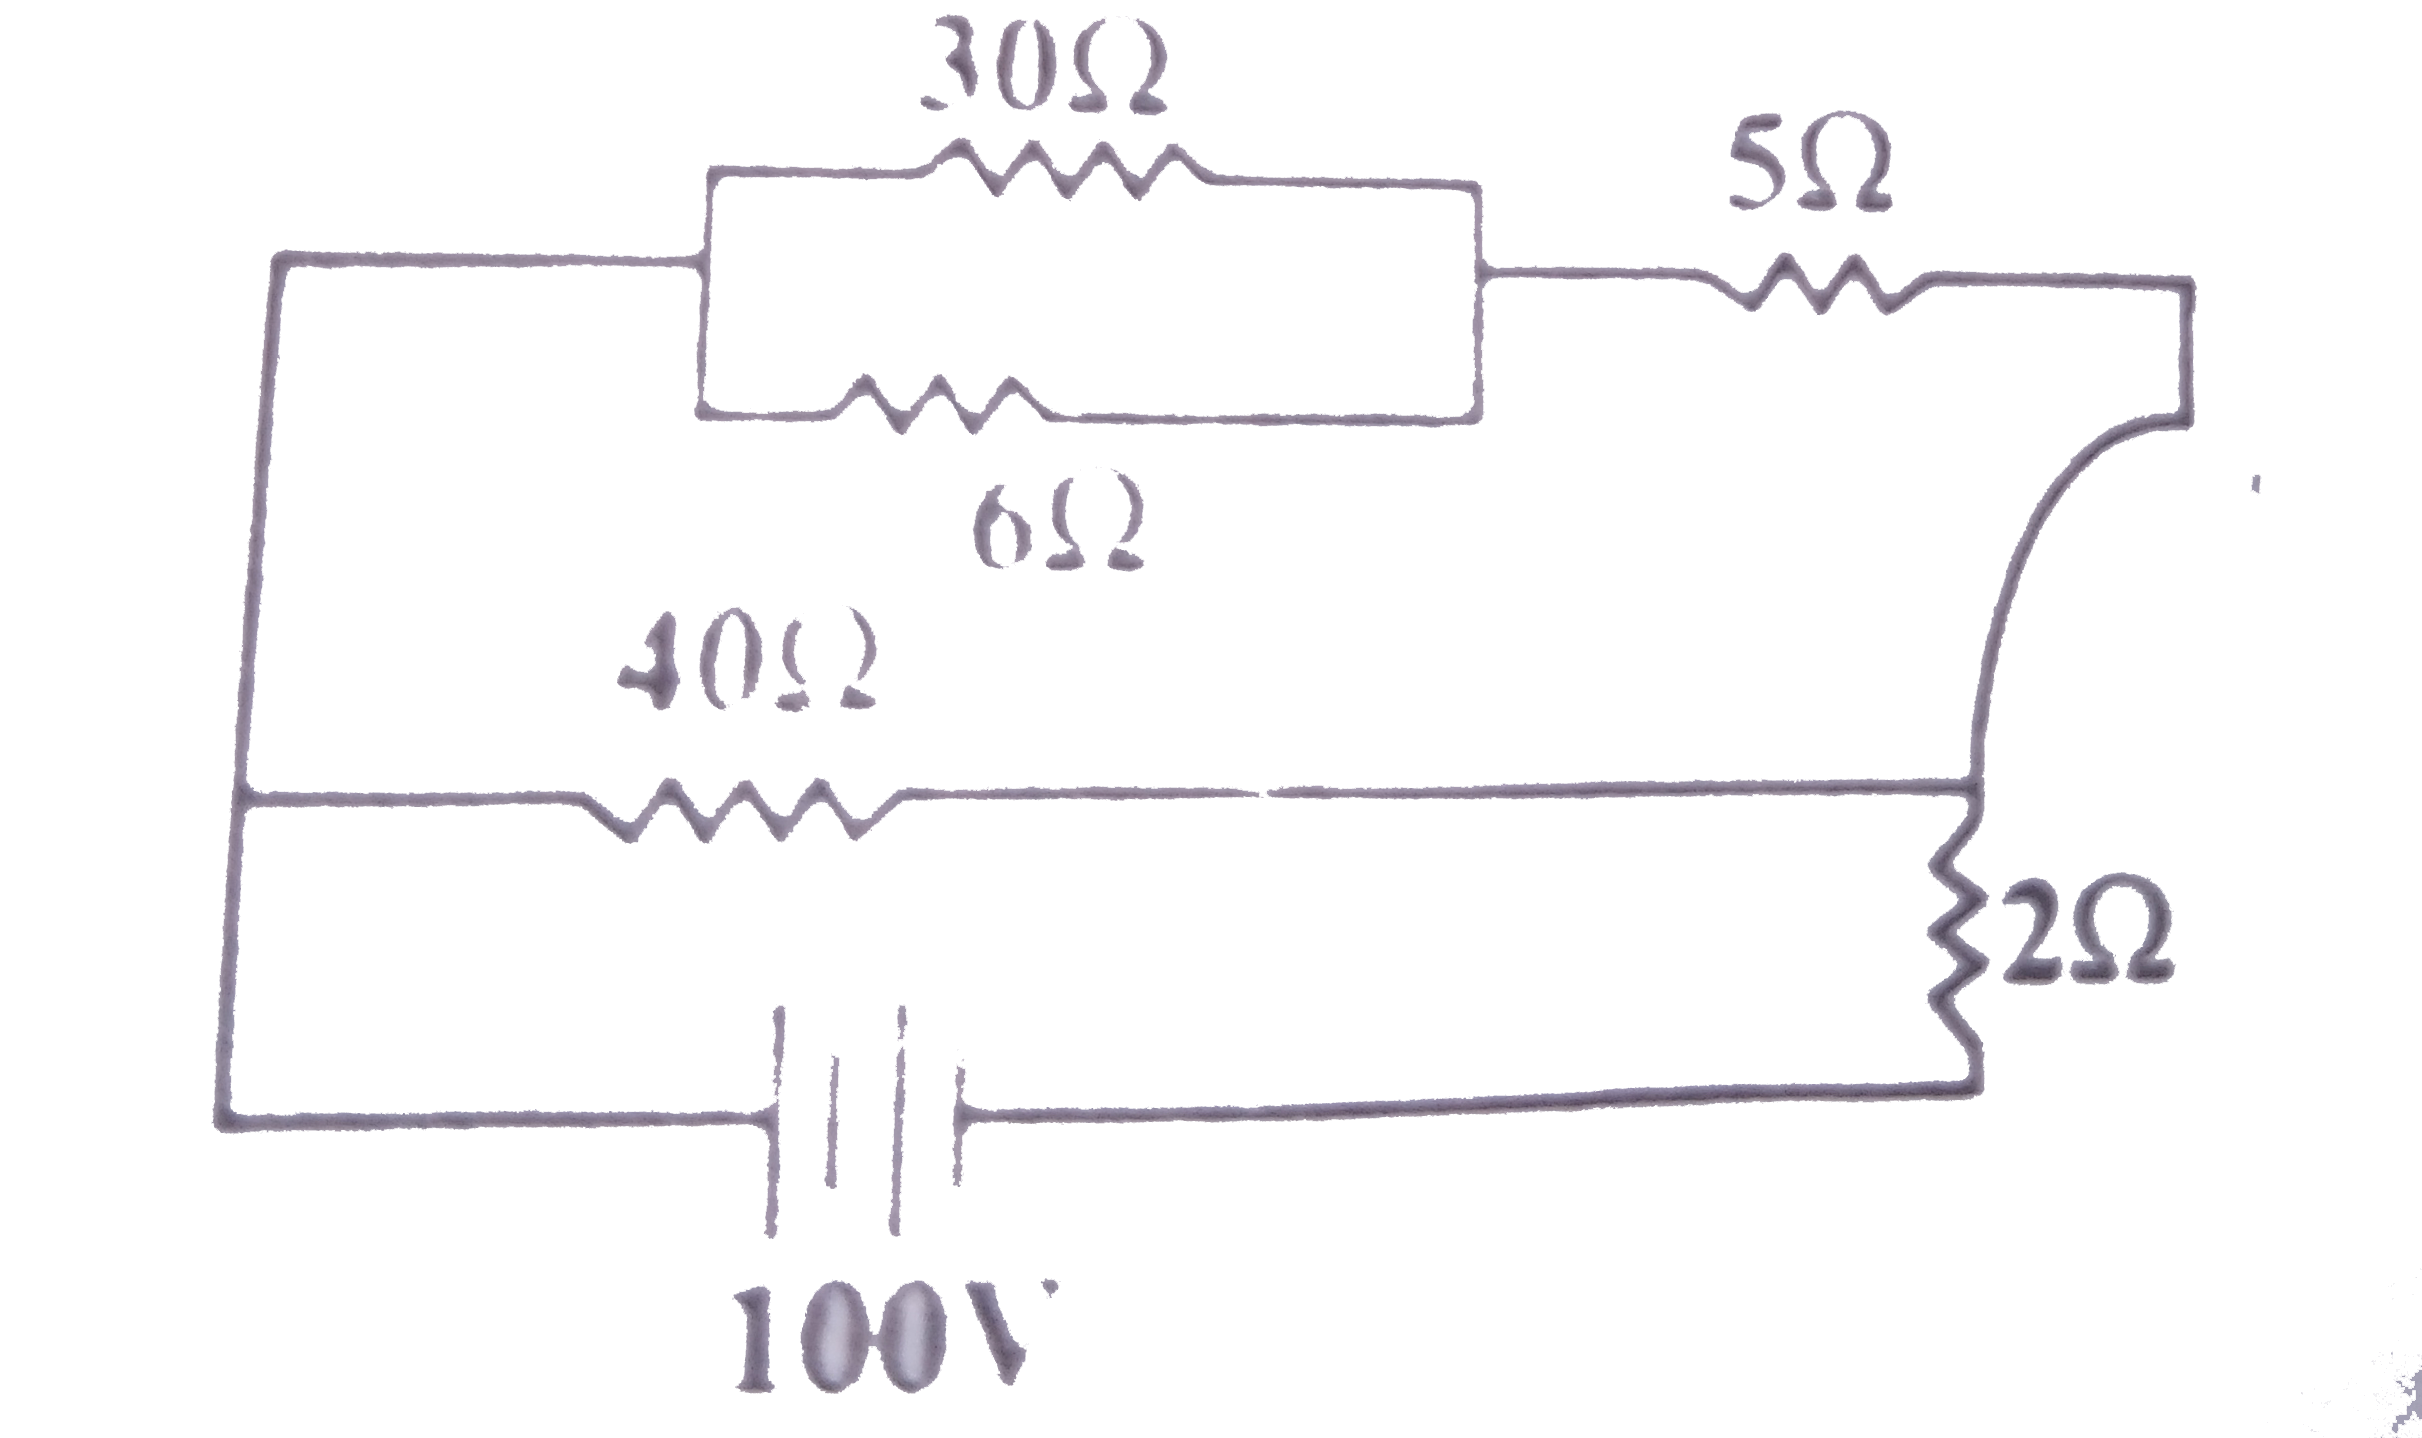 चित्र में दर्शाए अनुसार परिपथ में 100 V की बैटरी संयोजित है। यदि 2Omega के प्रतिरोधक में शक्ति व्यय 200 W हो तो 5Omega के प्रतिरोधक में व्यय शक्ति कितनी होगी?